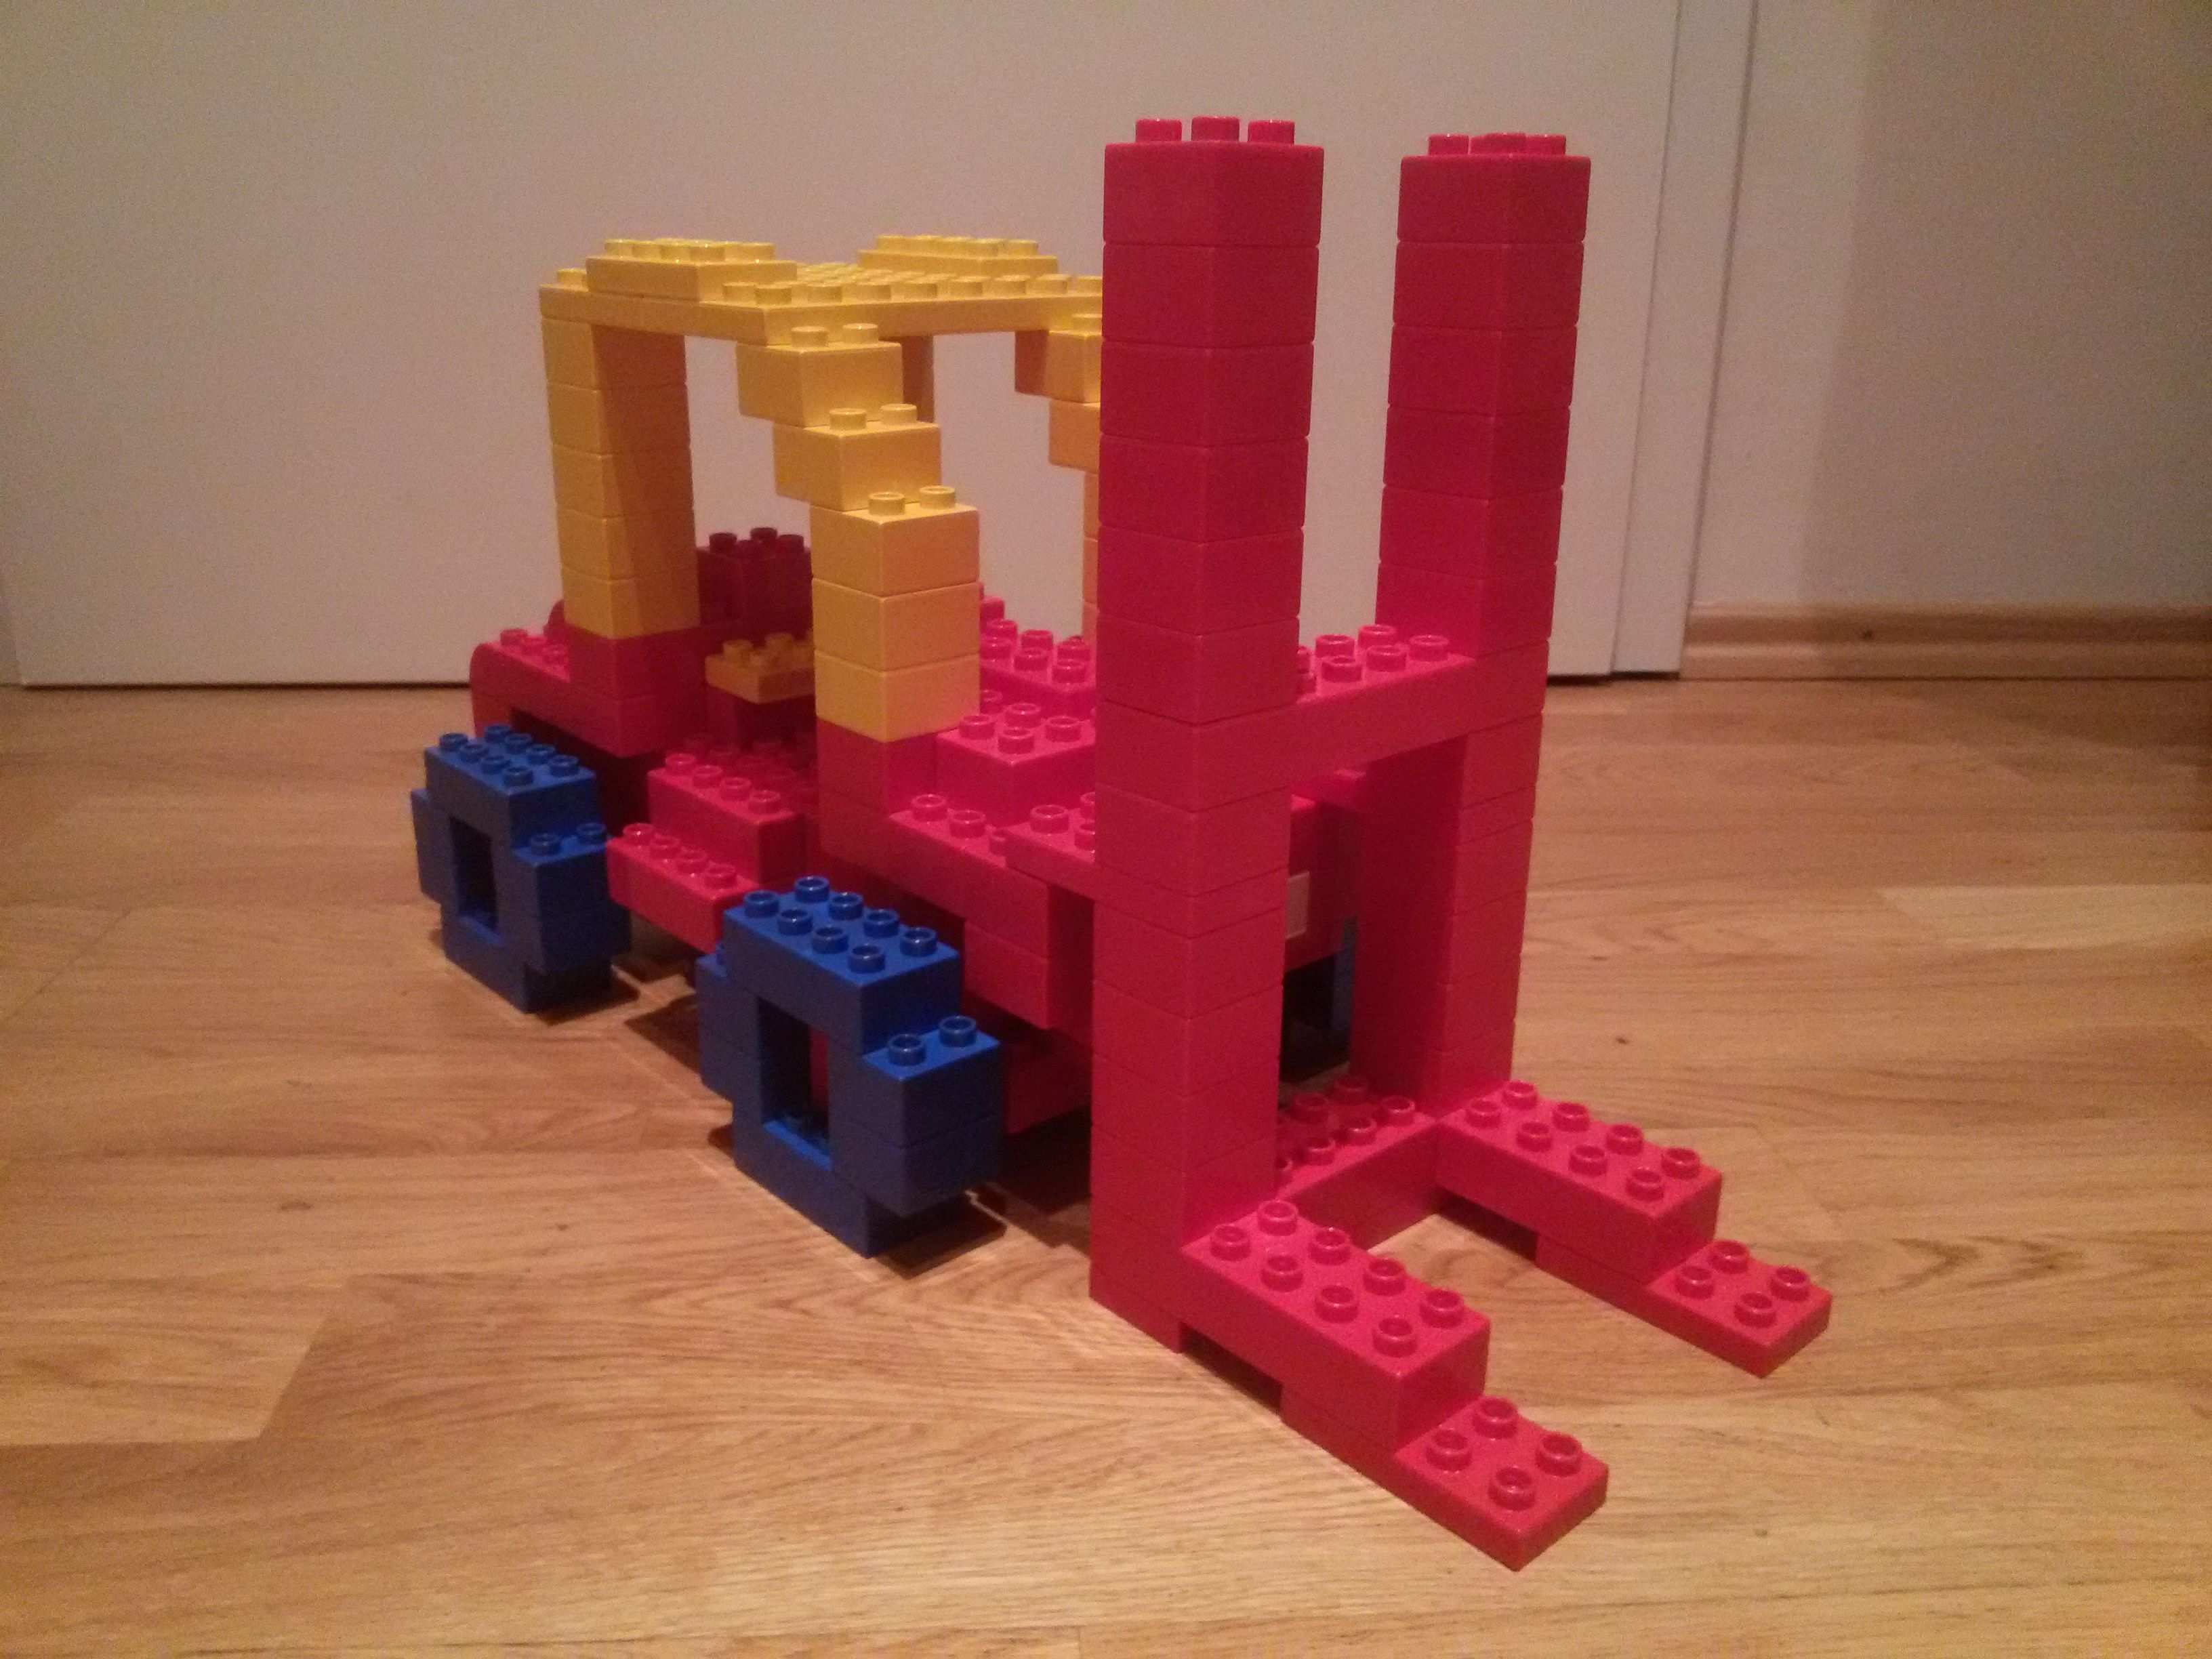 Hier Siehst Du Einen Gabelstabler Aus Lego Duplo Diese Und Weitere Bauideen Gibt Es Auf Brickaddict De Ein Lego Duplo Lego Bauideen Lego Duplo Bauanleitung